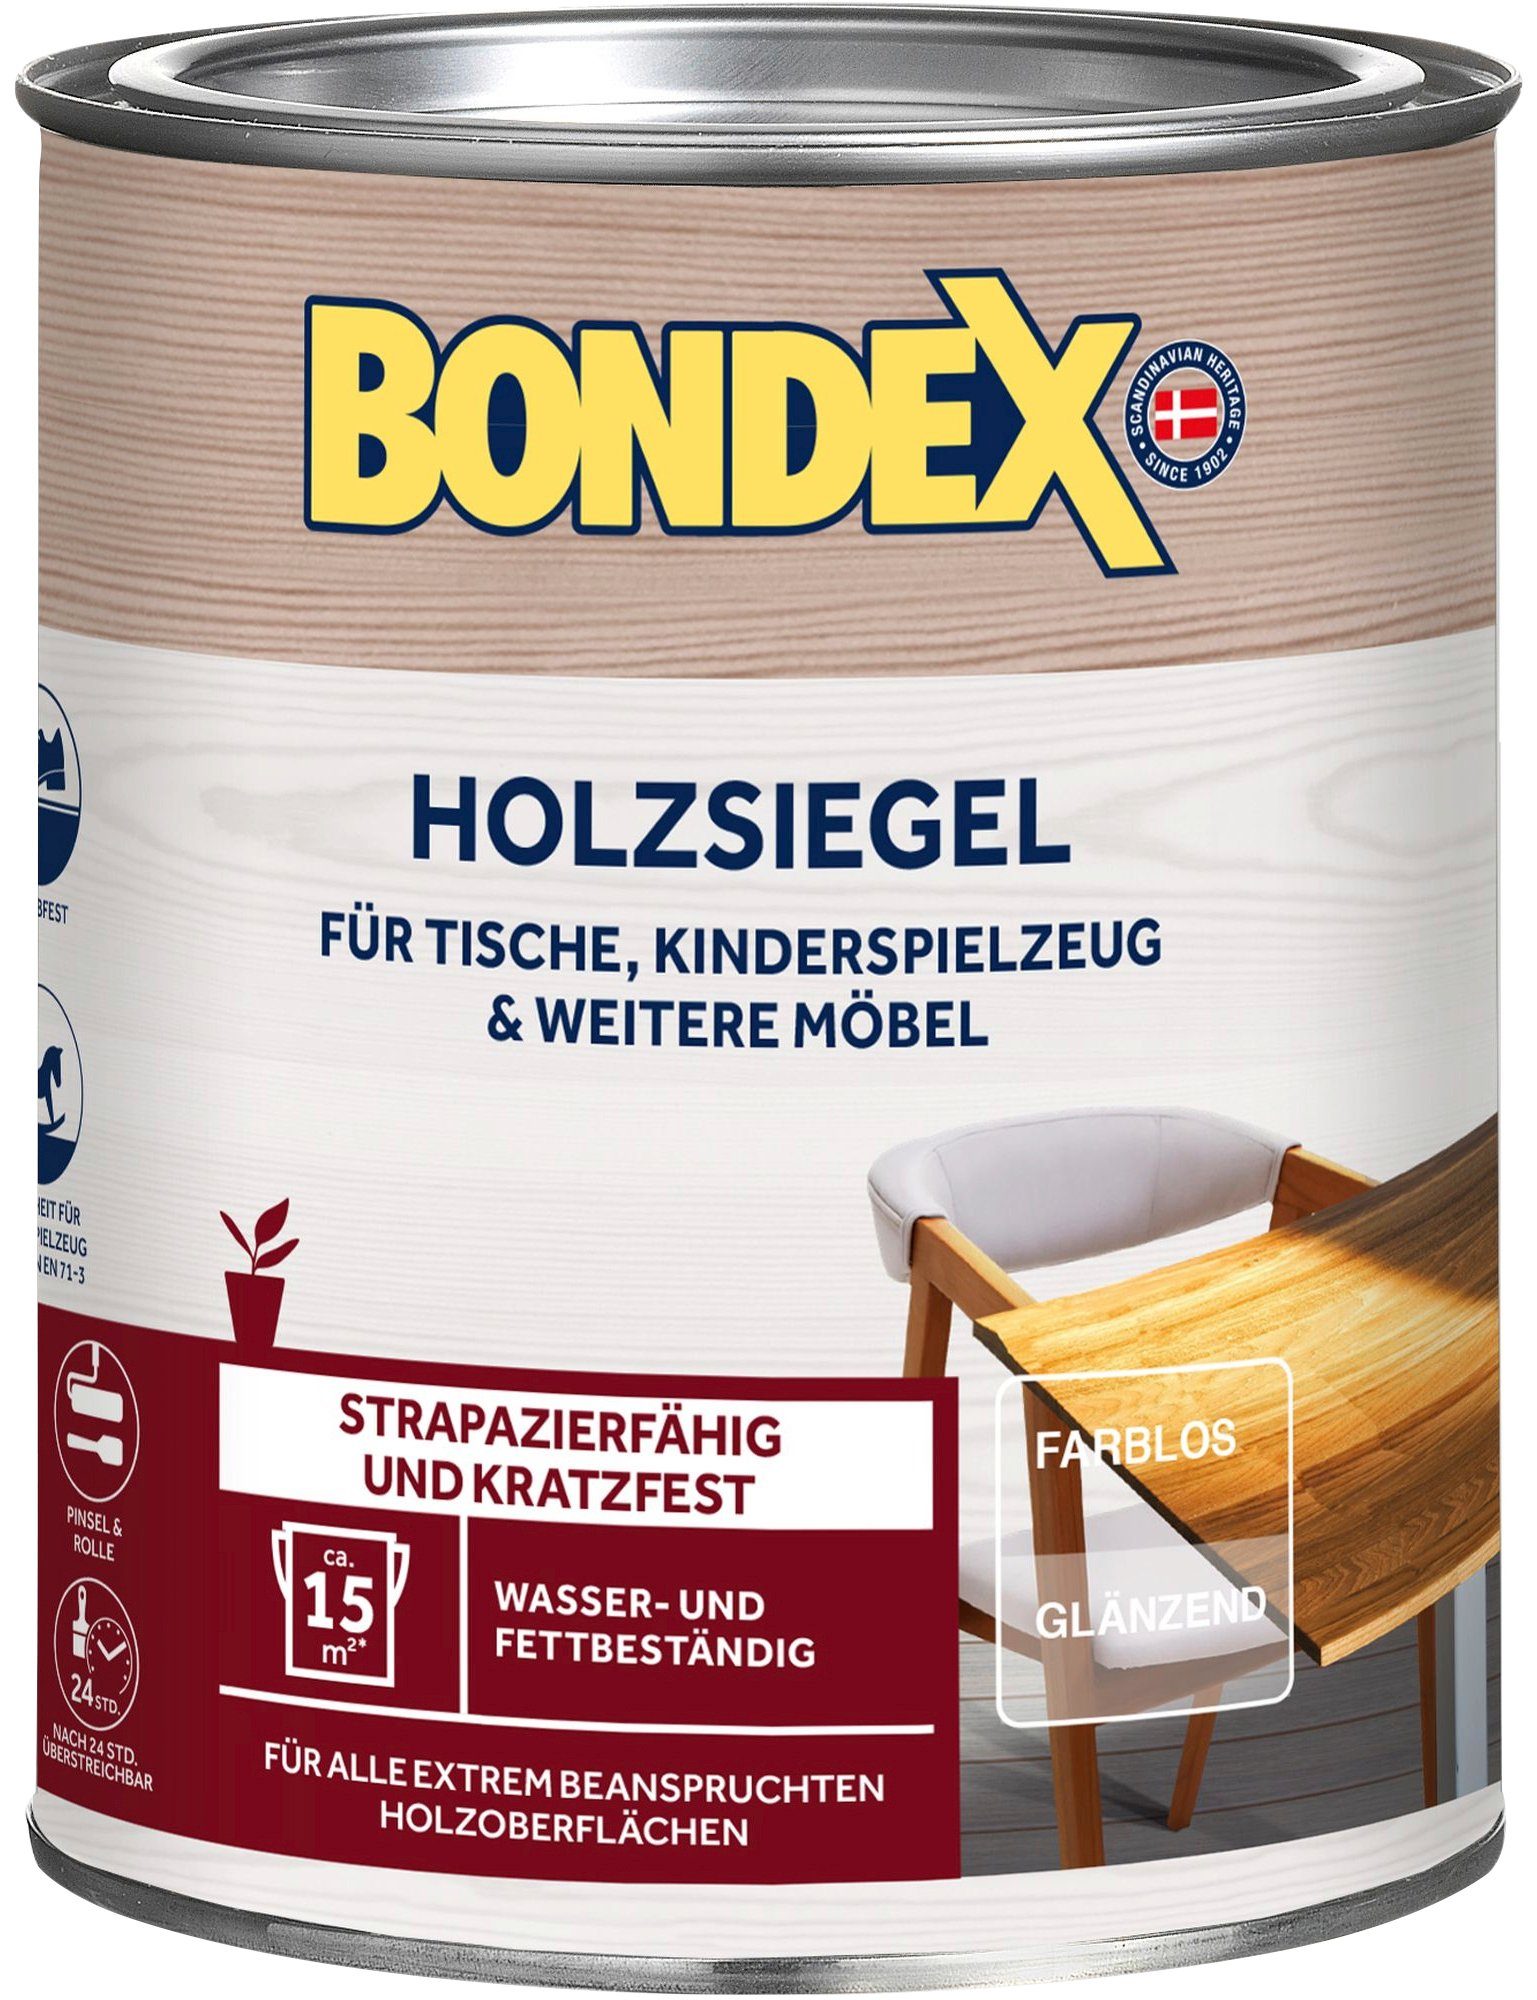 Bondex Lasur HOLZSIEGEL, Farblos / Glänzend, 0,25 Liter Inhalt unbekannt